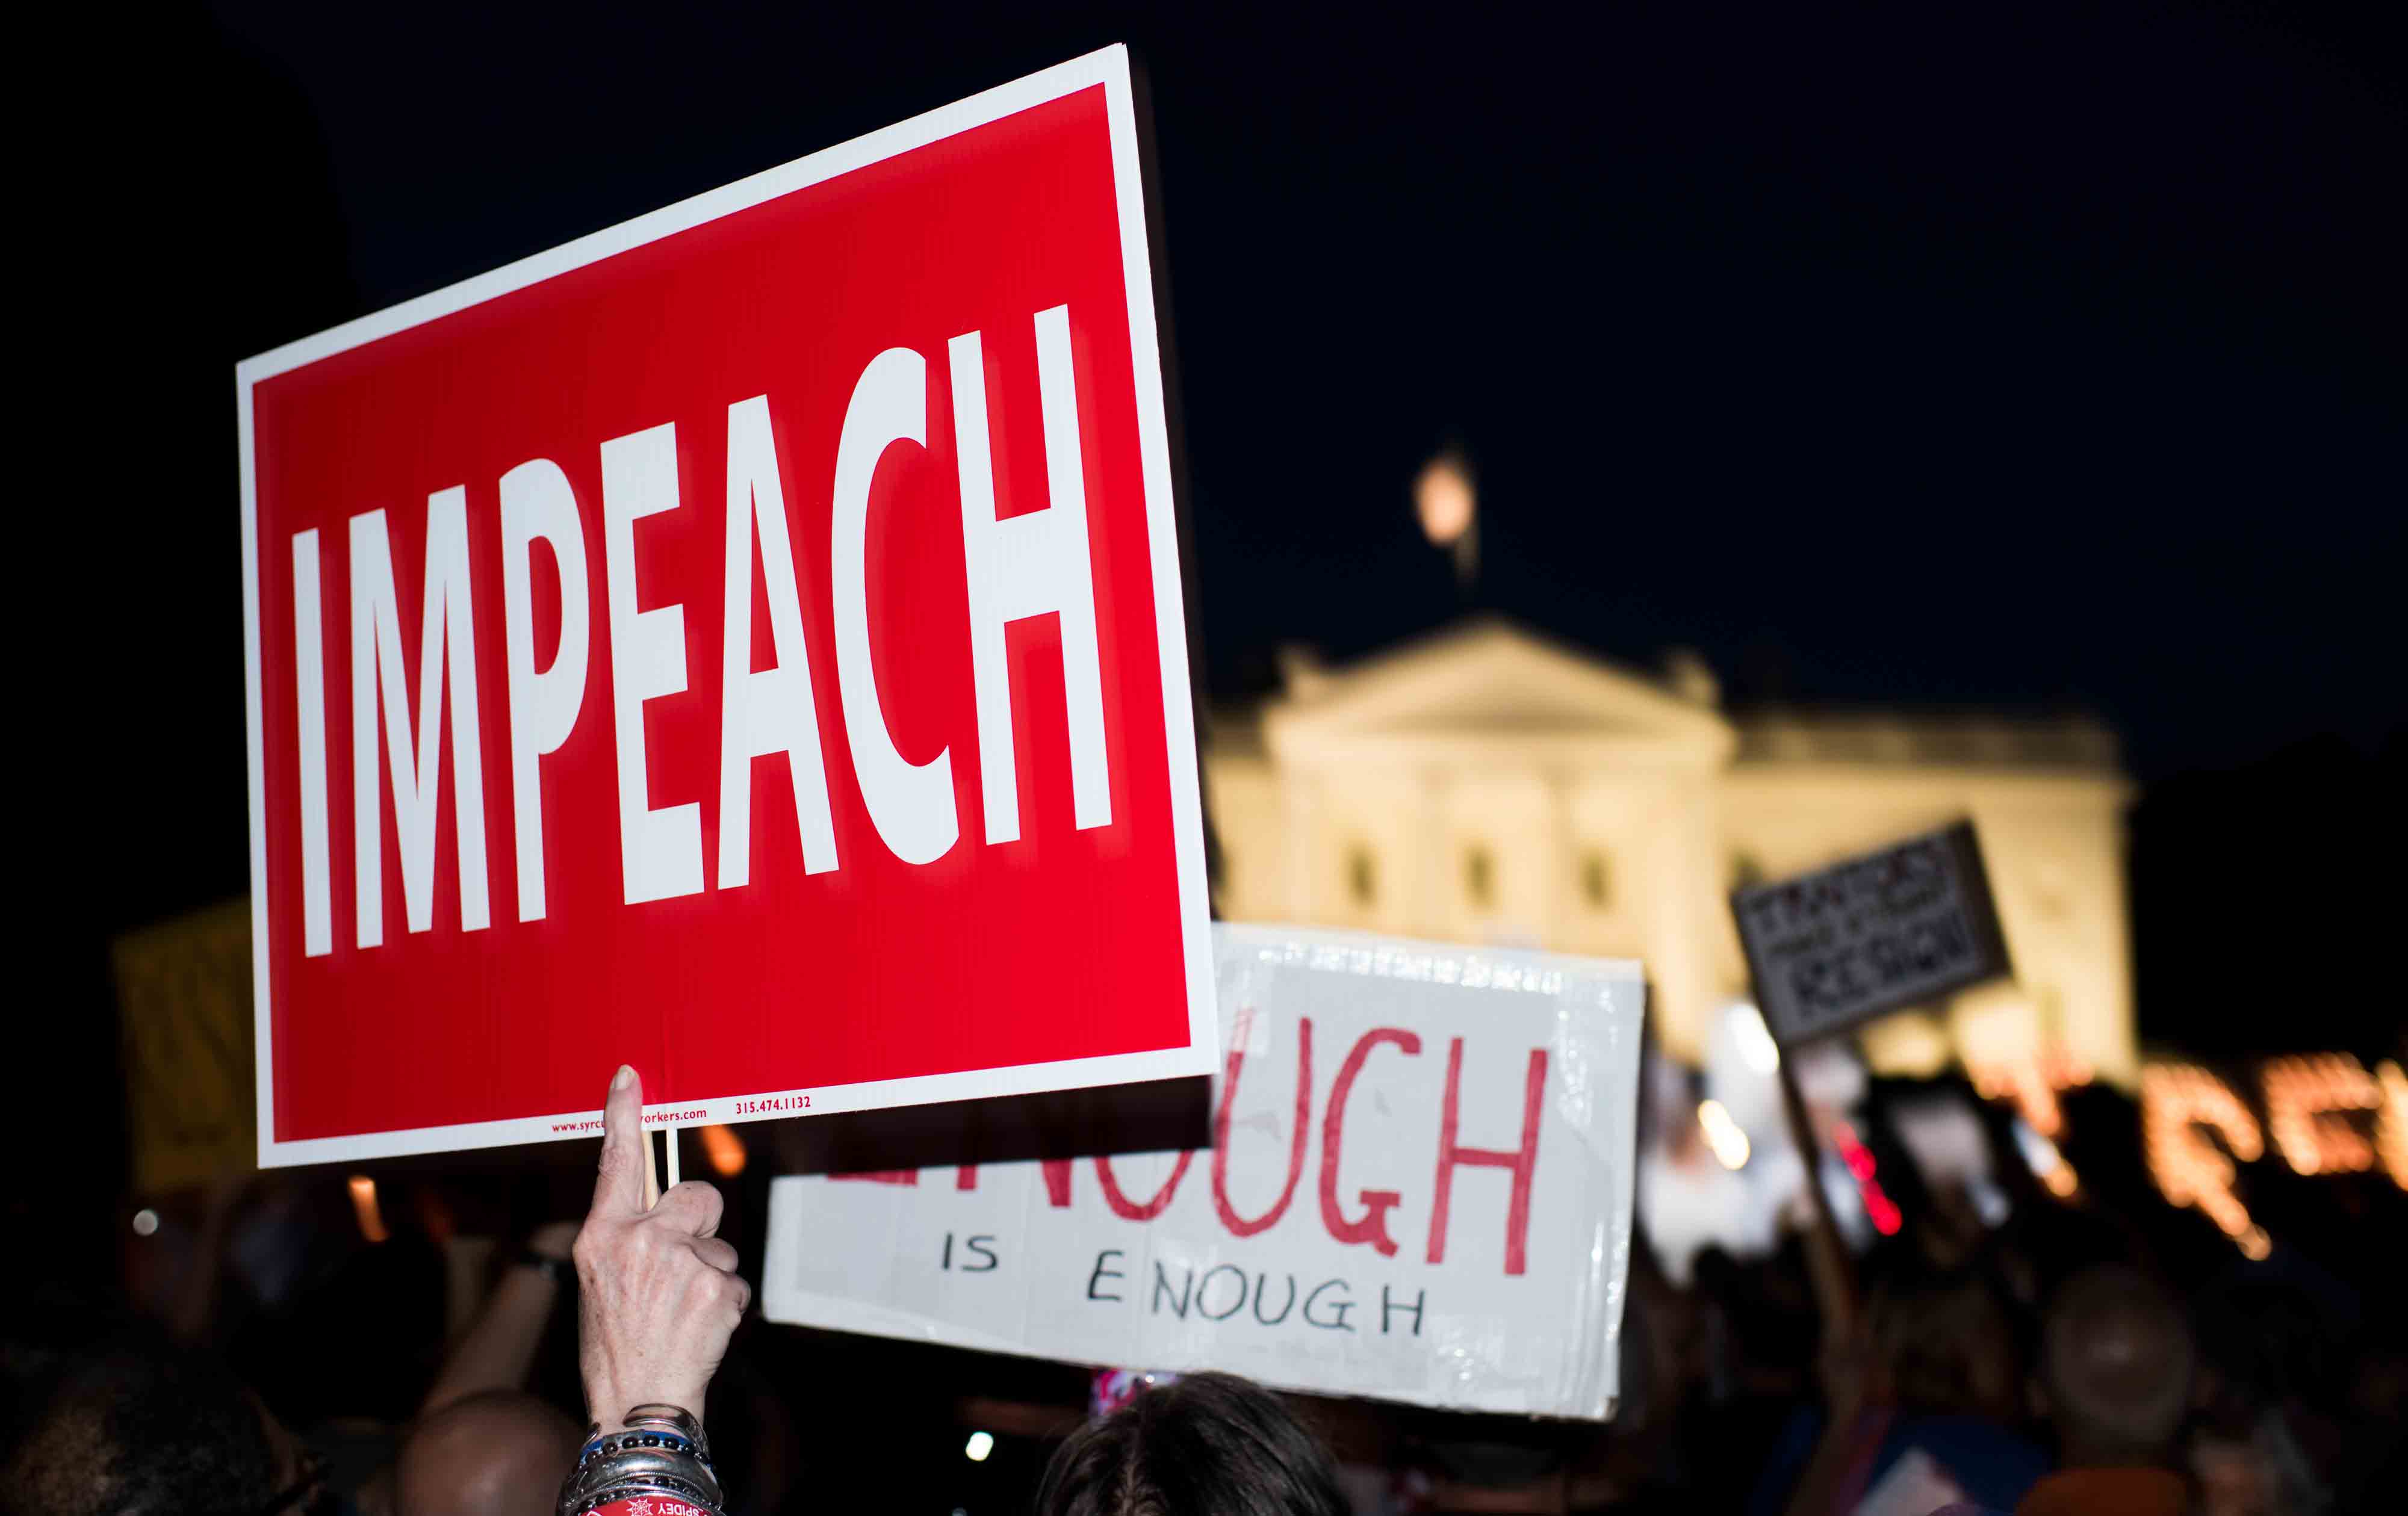 Protesters demand Trump’s impeachment